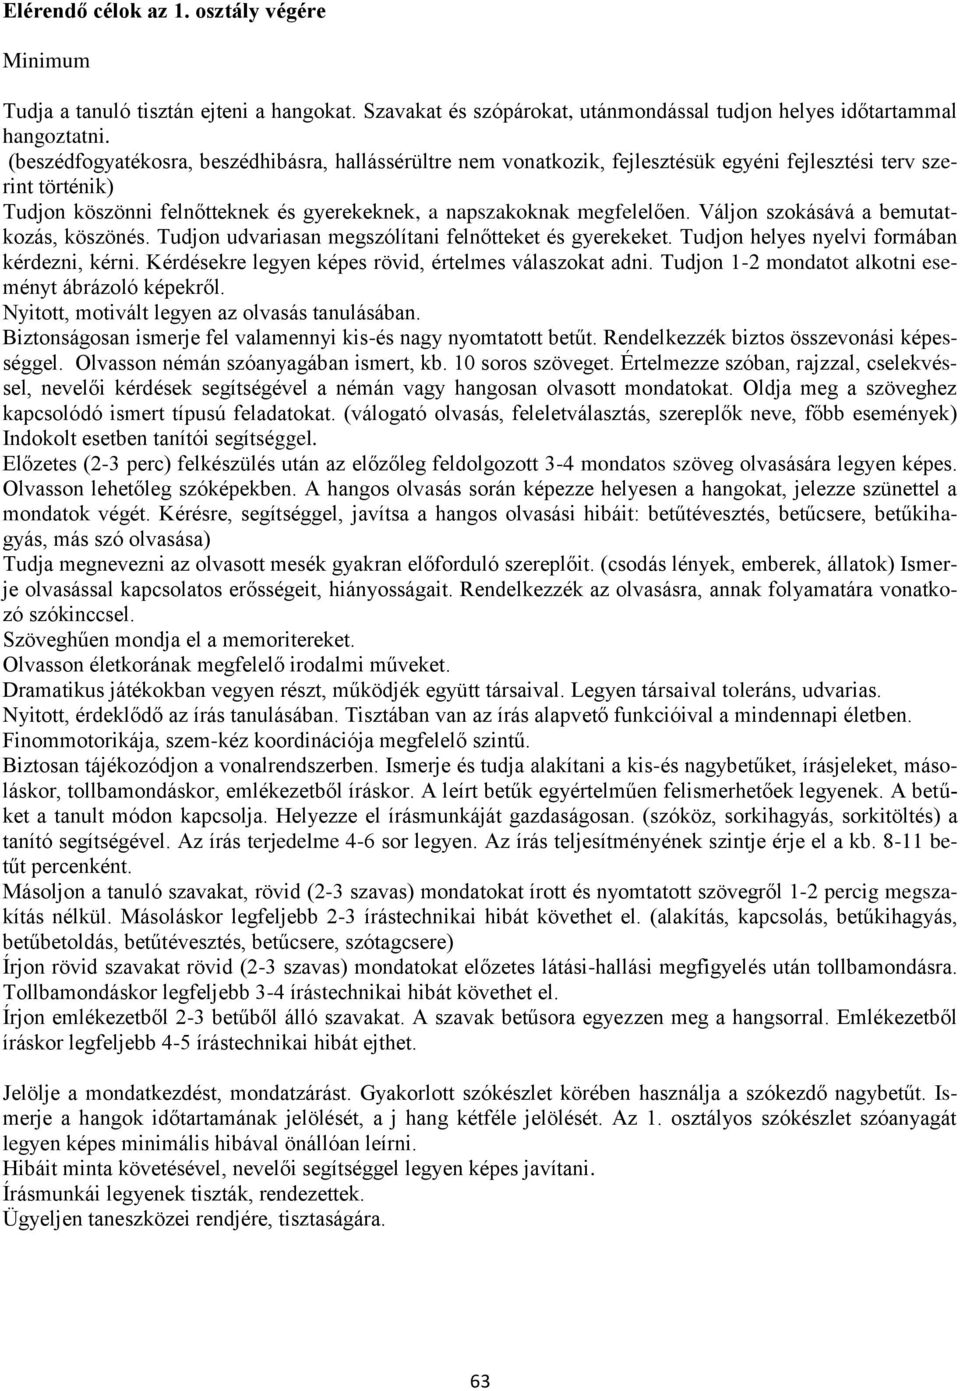 Alsó tagozat. Magyar nyelv és irodalom 1-4. évfolyam - PDF Ingyenes letöltés